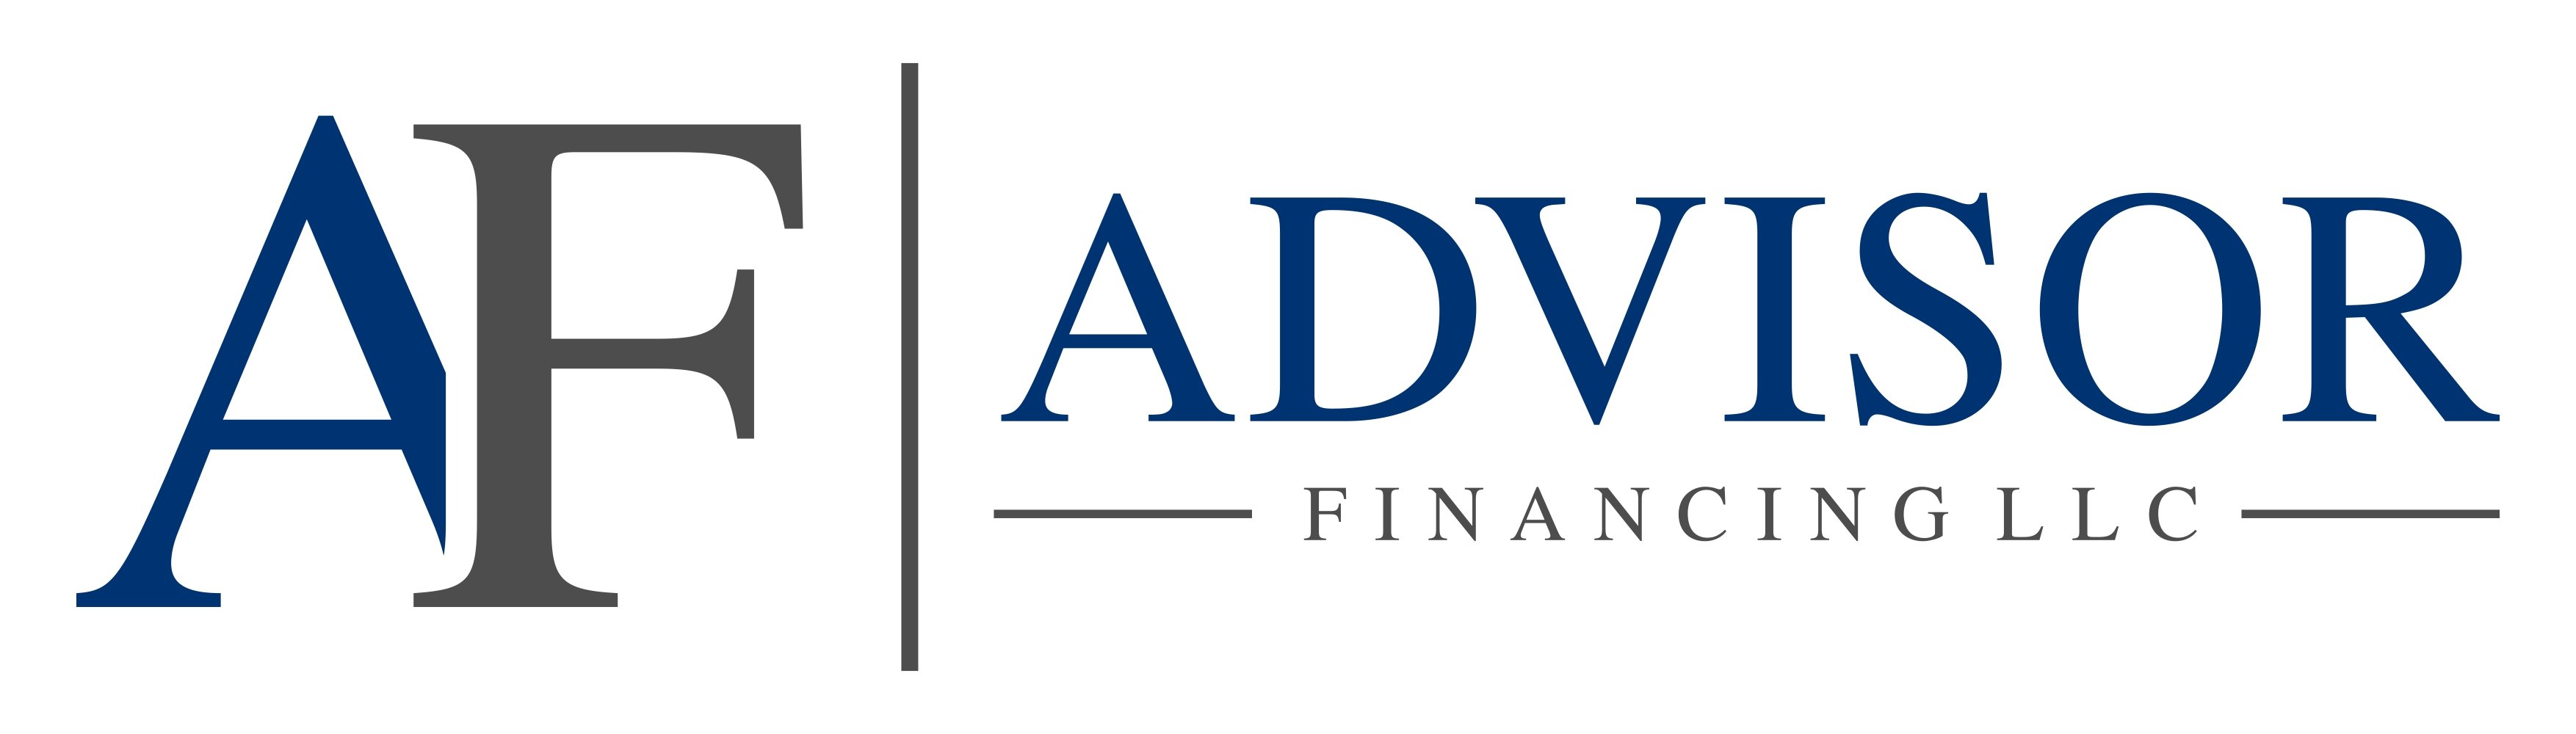 Advisor Financing LLC